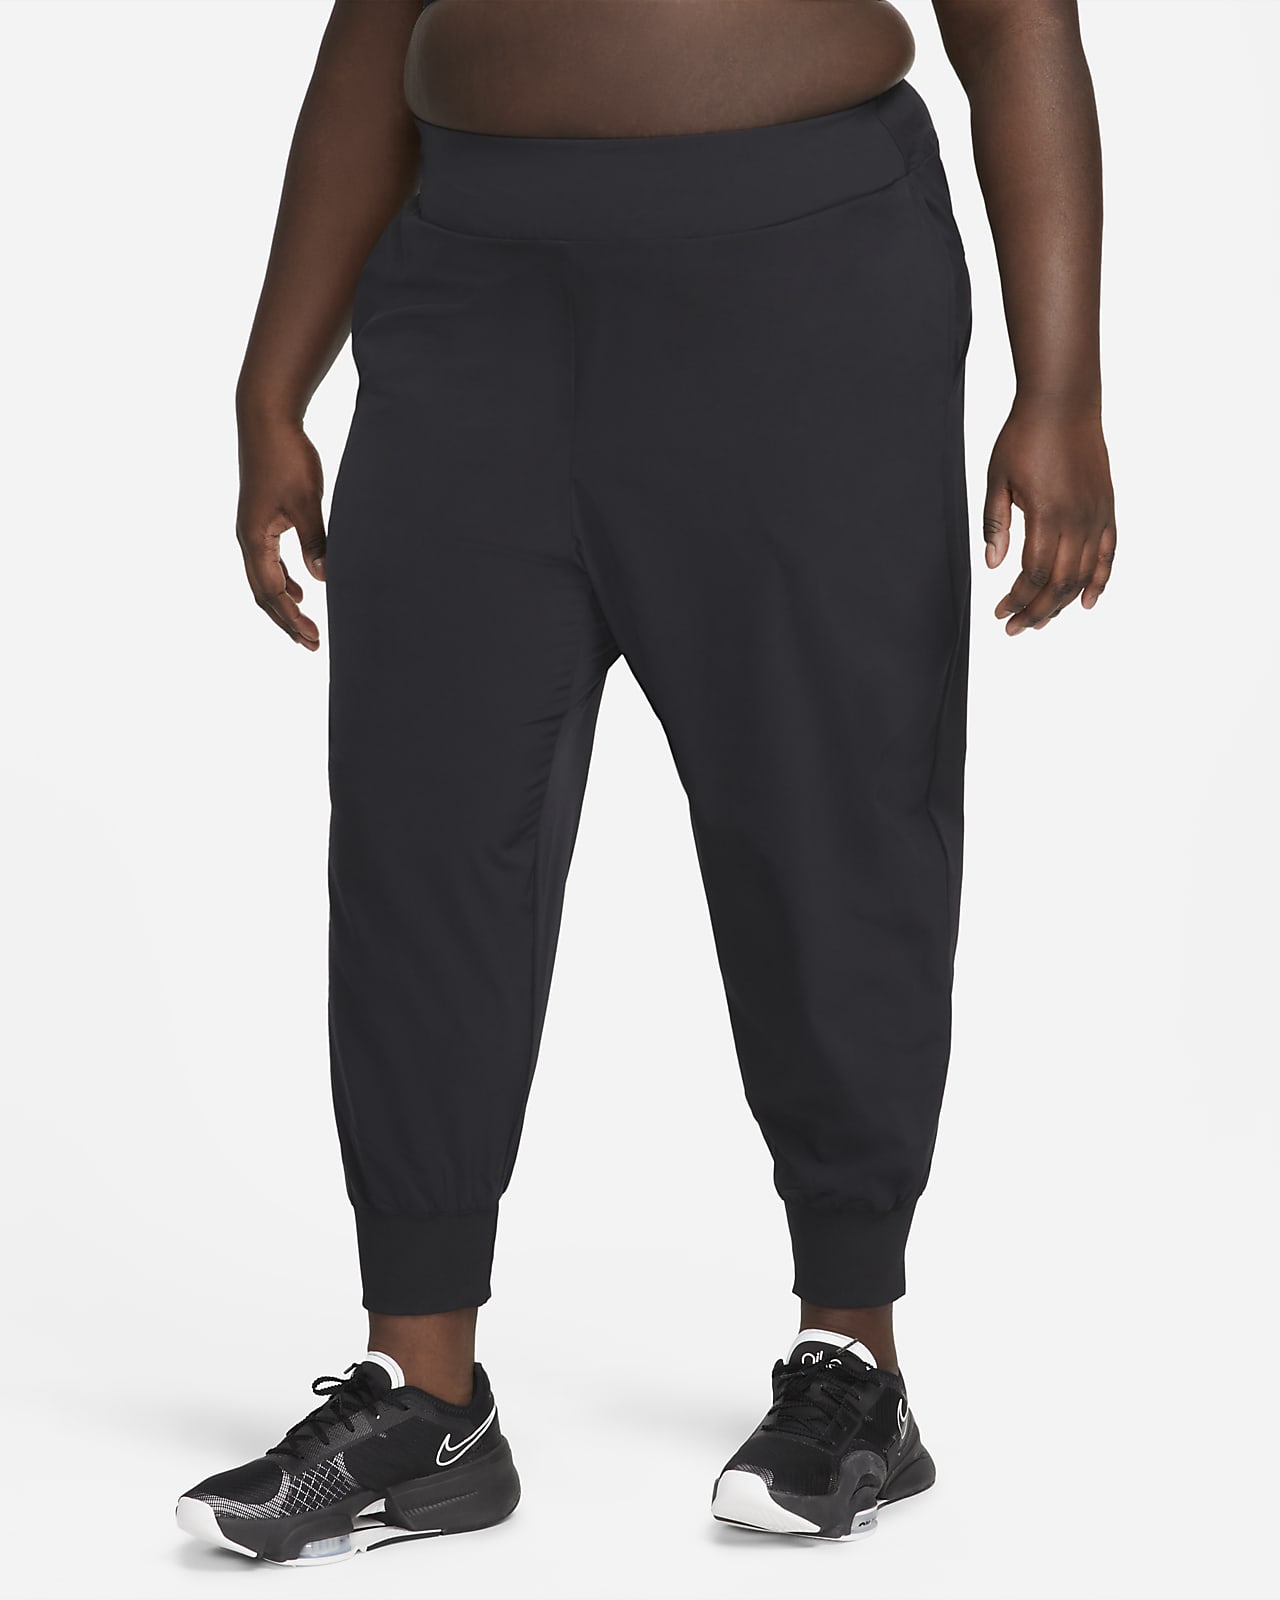 Nike Dri-FIT Bliss Women's Mid-Rise 7/8 Joggers (Plus Size)